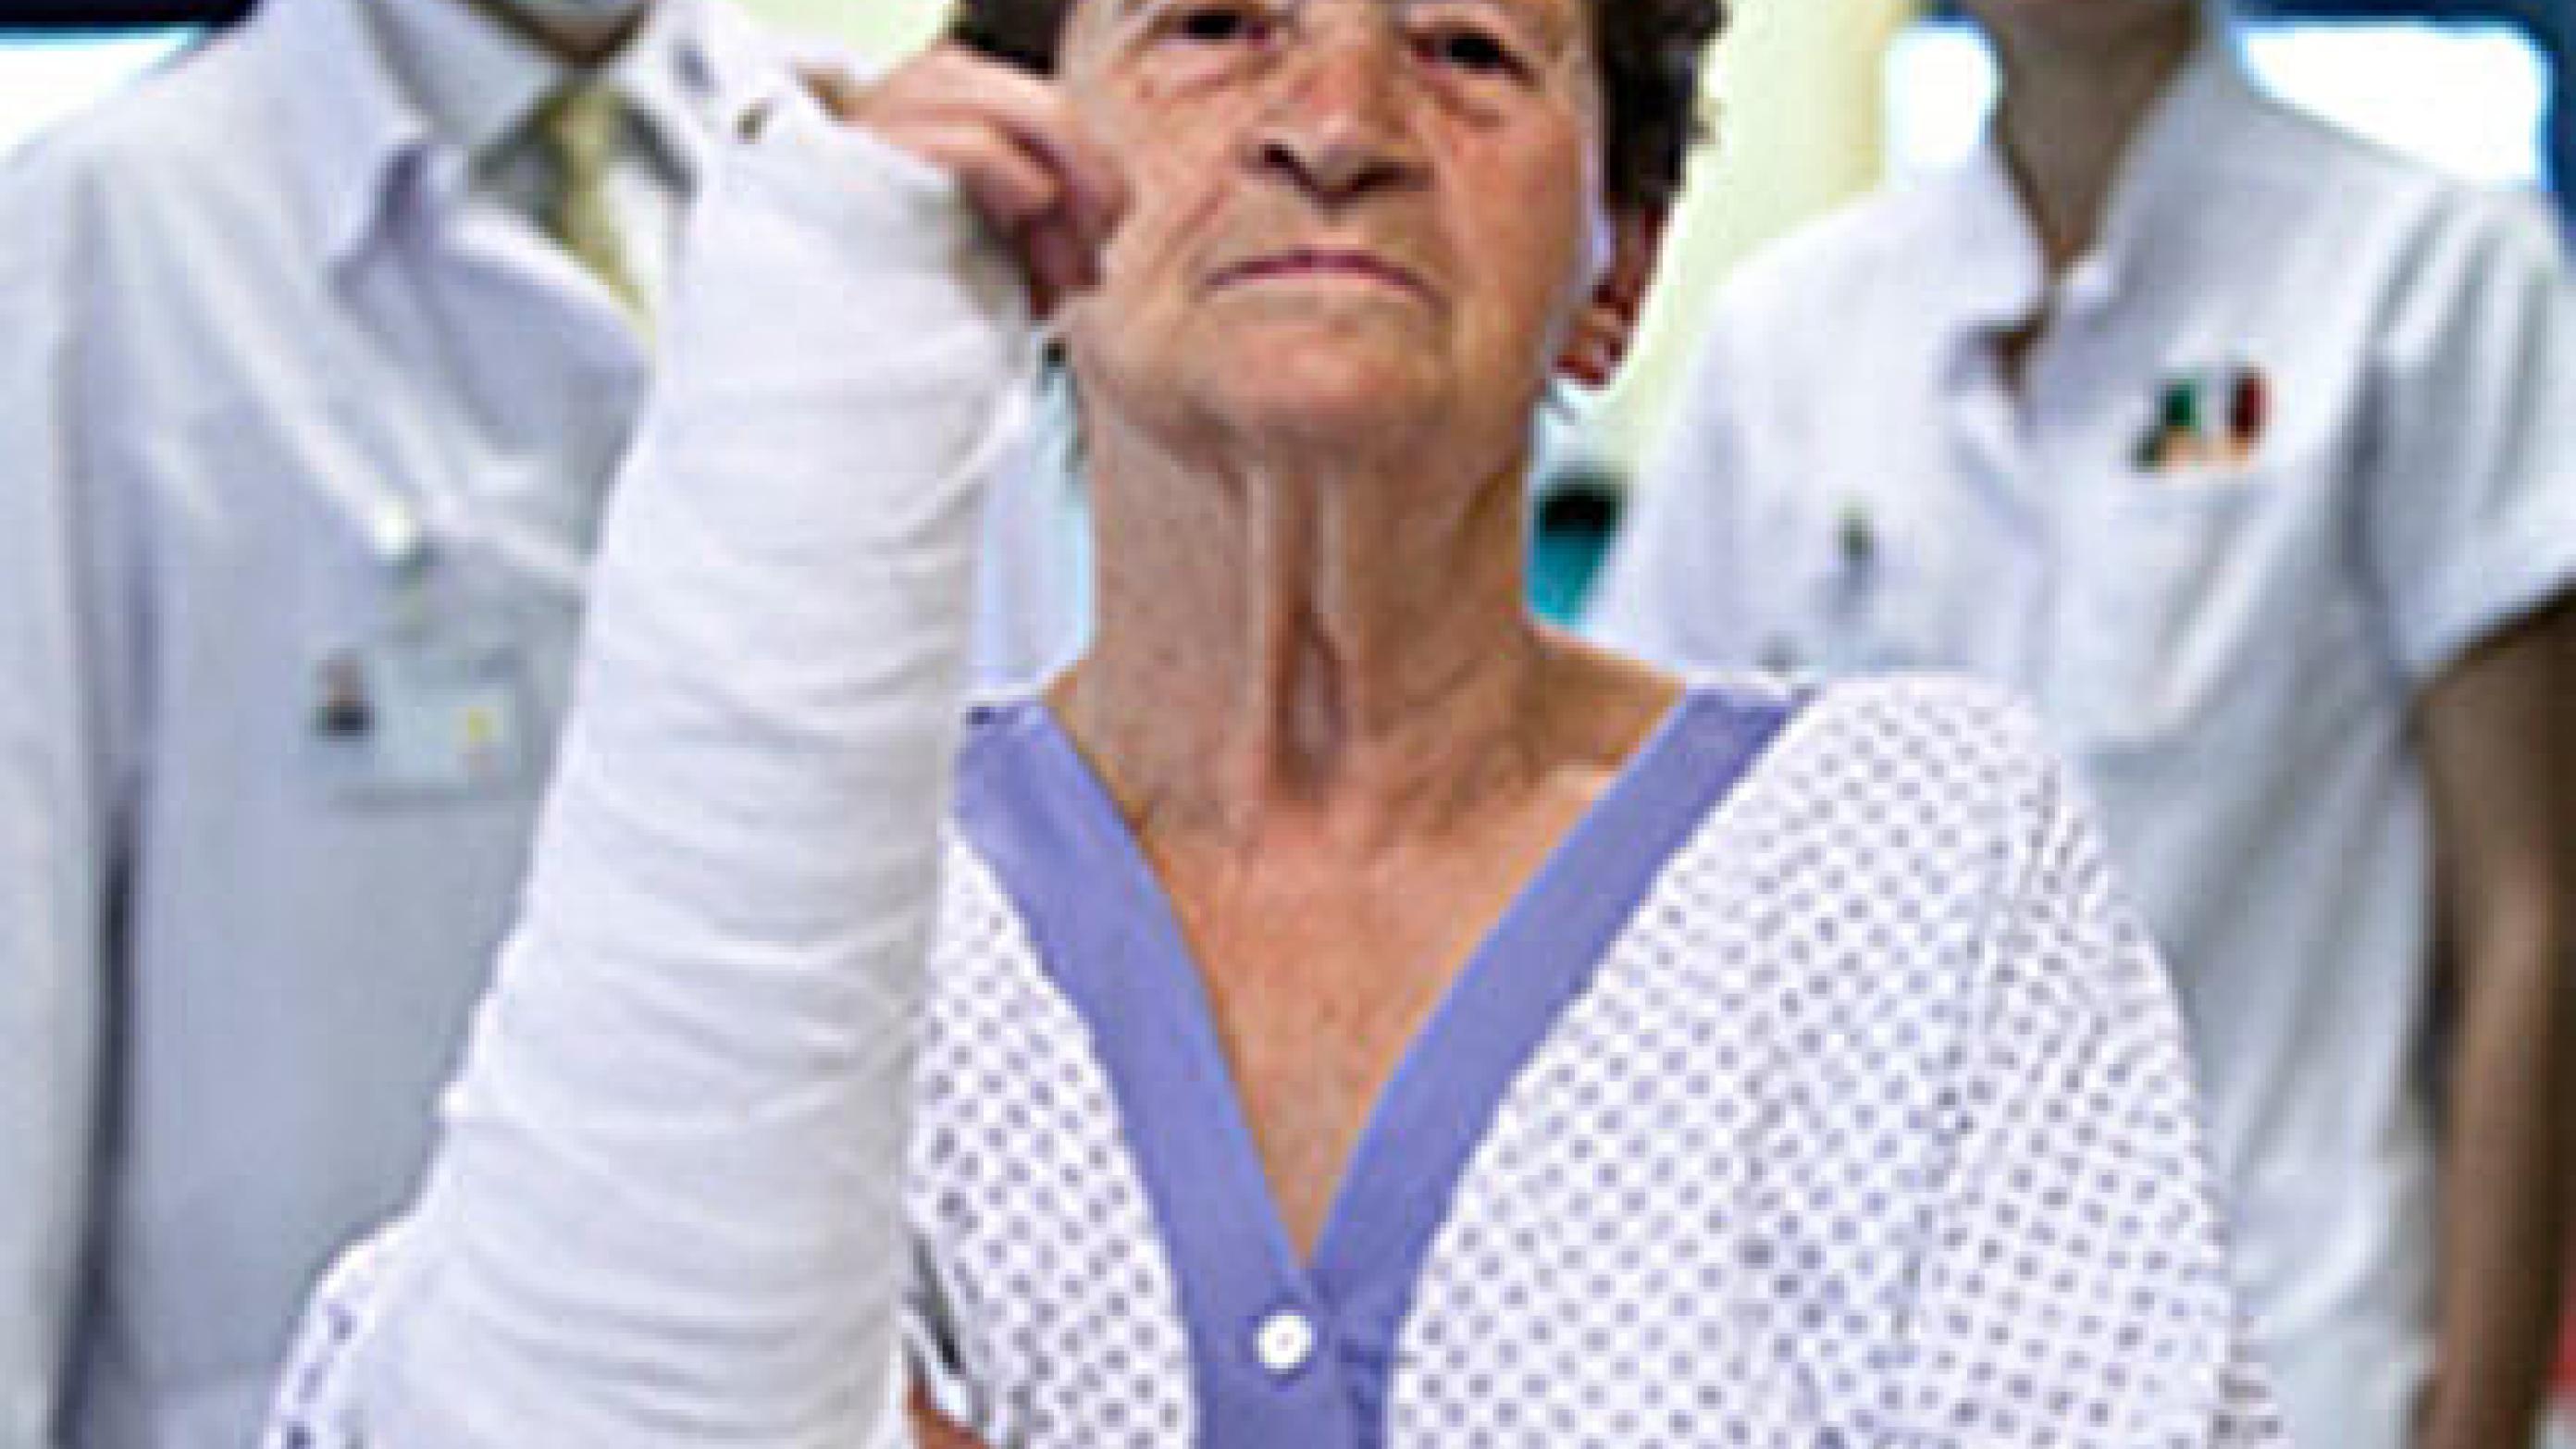 Patient med håndledsbrud. Frakturforebyggelseskoordinator og overlæge ses i baggrunden. 